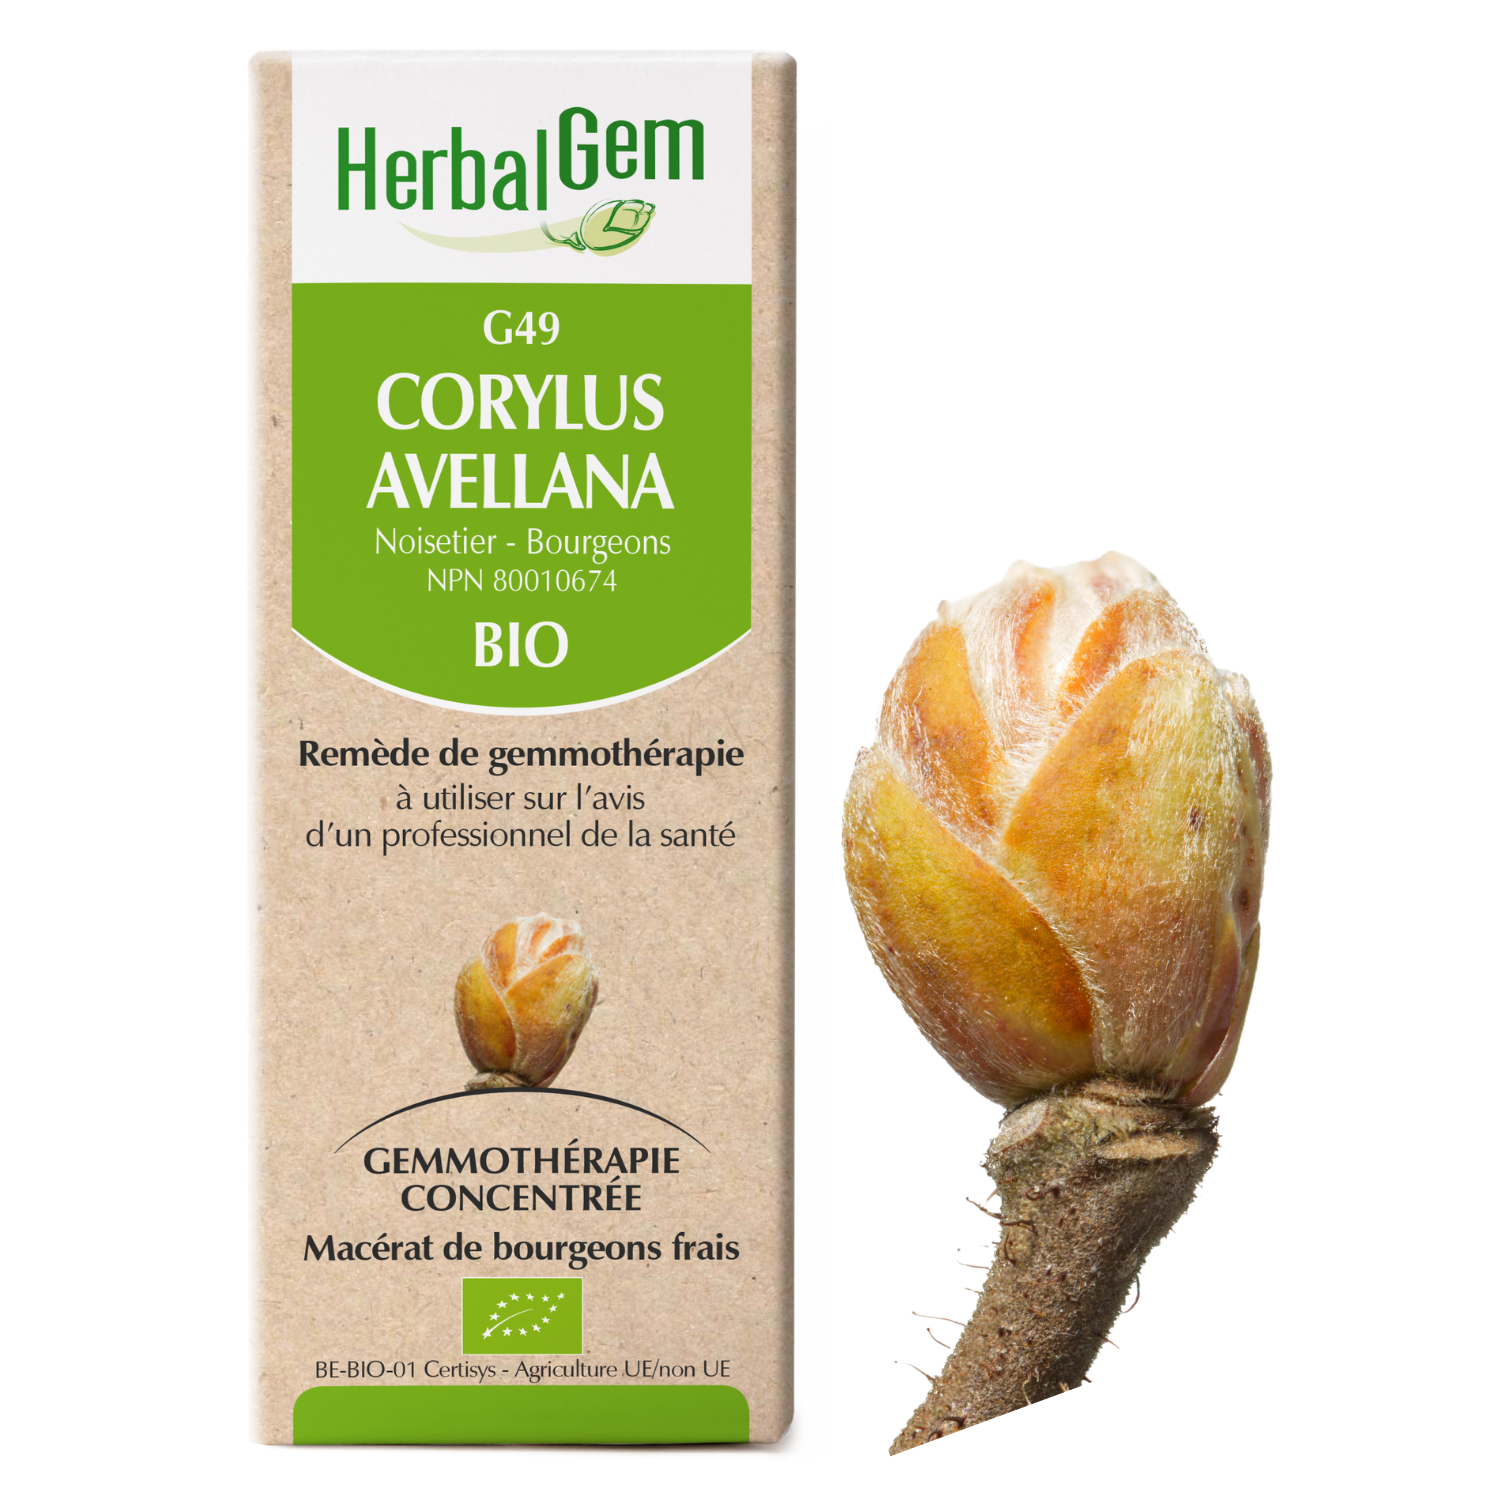 Corylus avellana (Hazel) G49